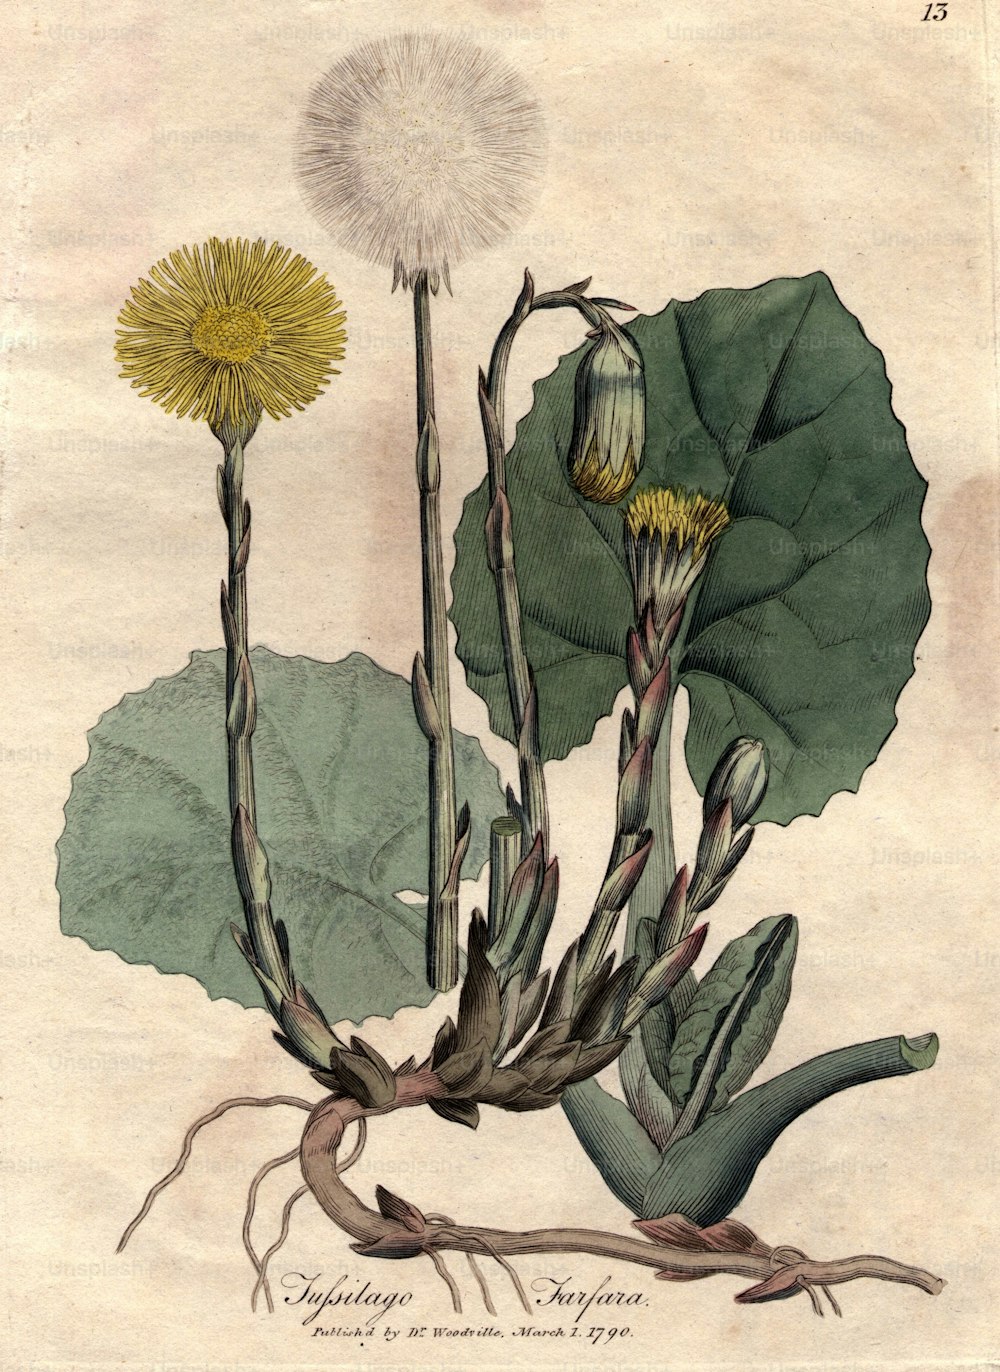 1er mars 1790 : Tufsilago farfara, ou tussilage.  Publication originale : De Woodville’s Medical Botany, illustré par James Sowerby - pub 1790 -1795 (Photo de Hulton Archive/Getty Images)